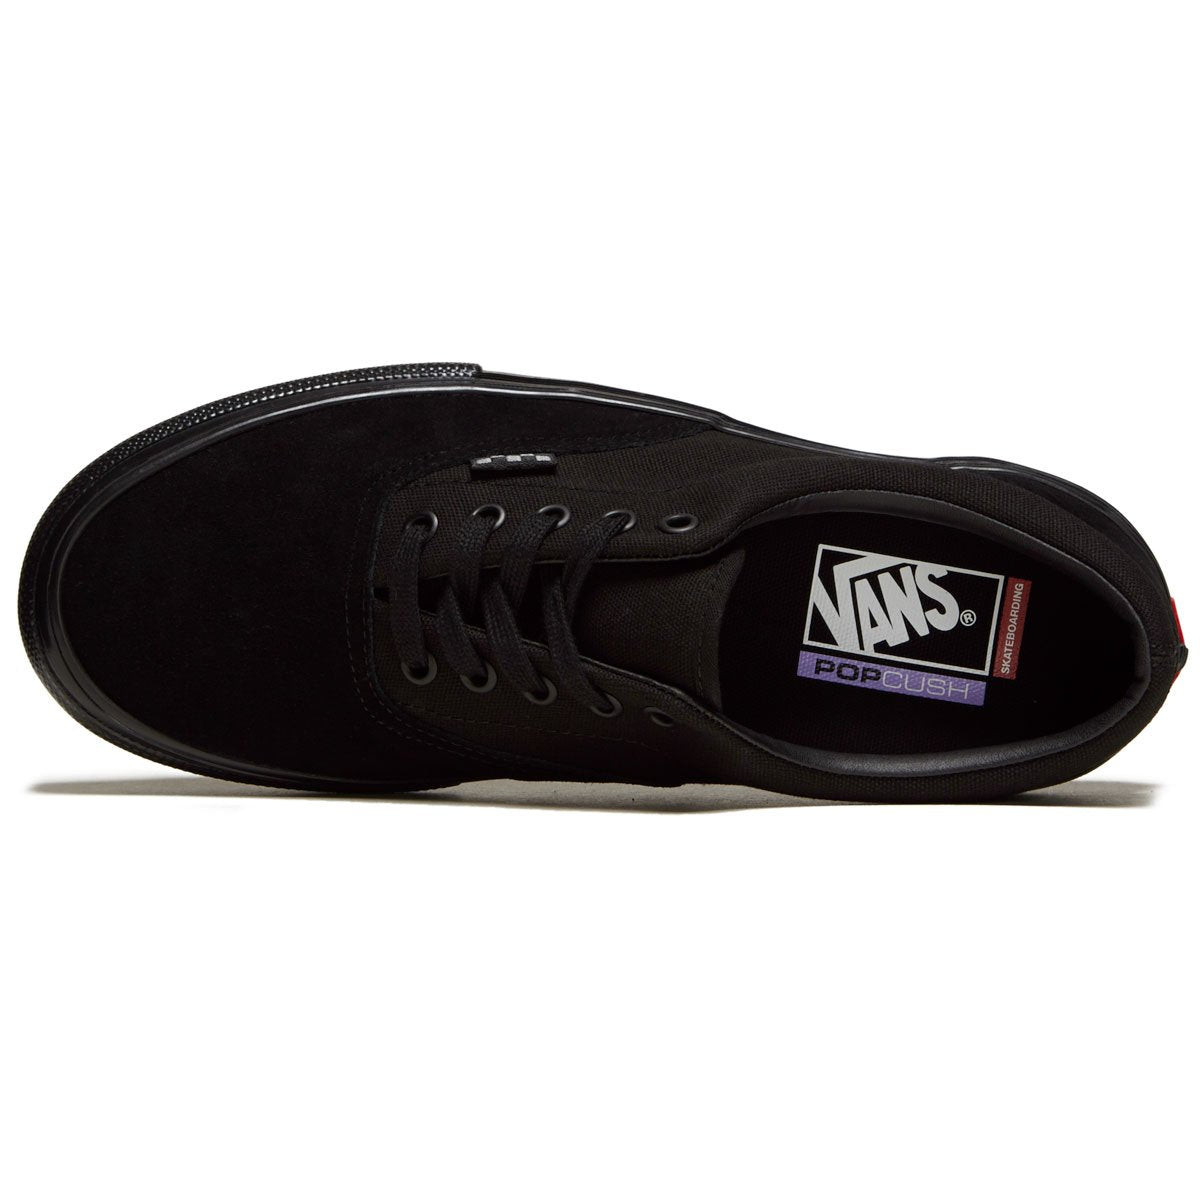 Vans Skate Era Shoes - Black/Black image 3